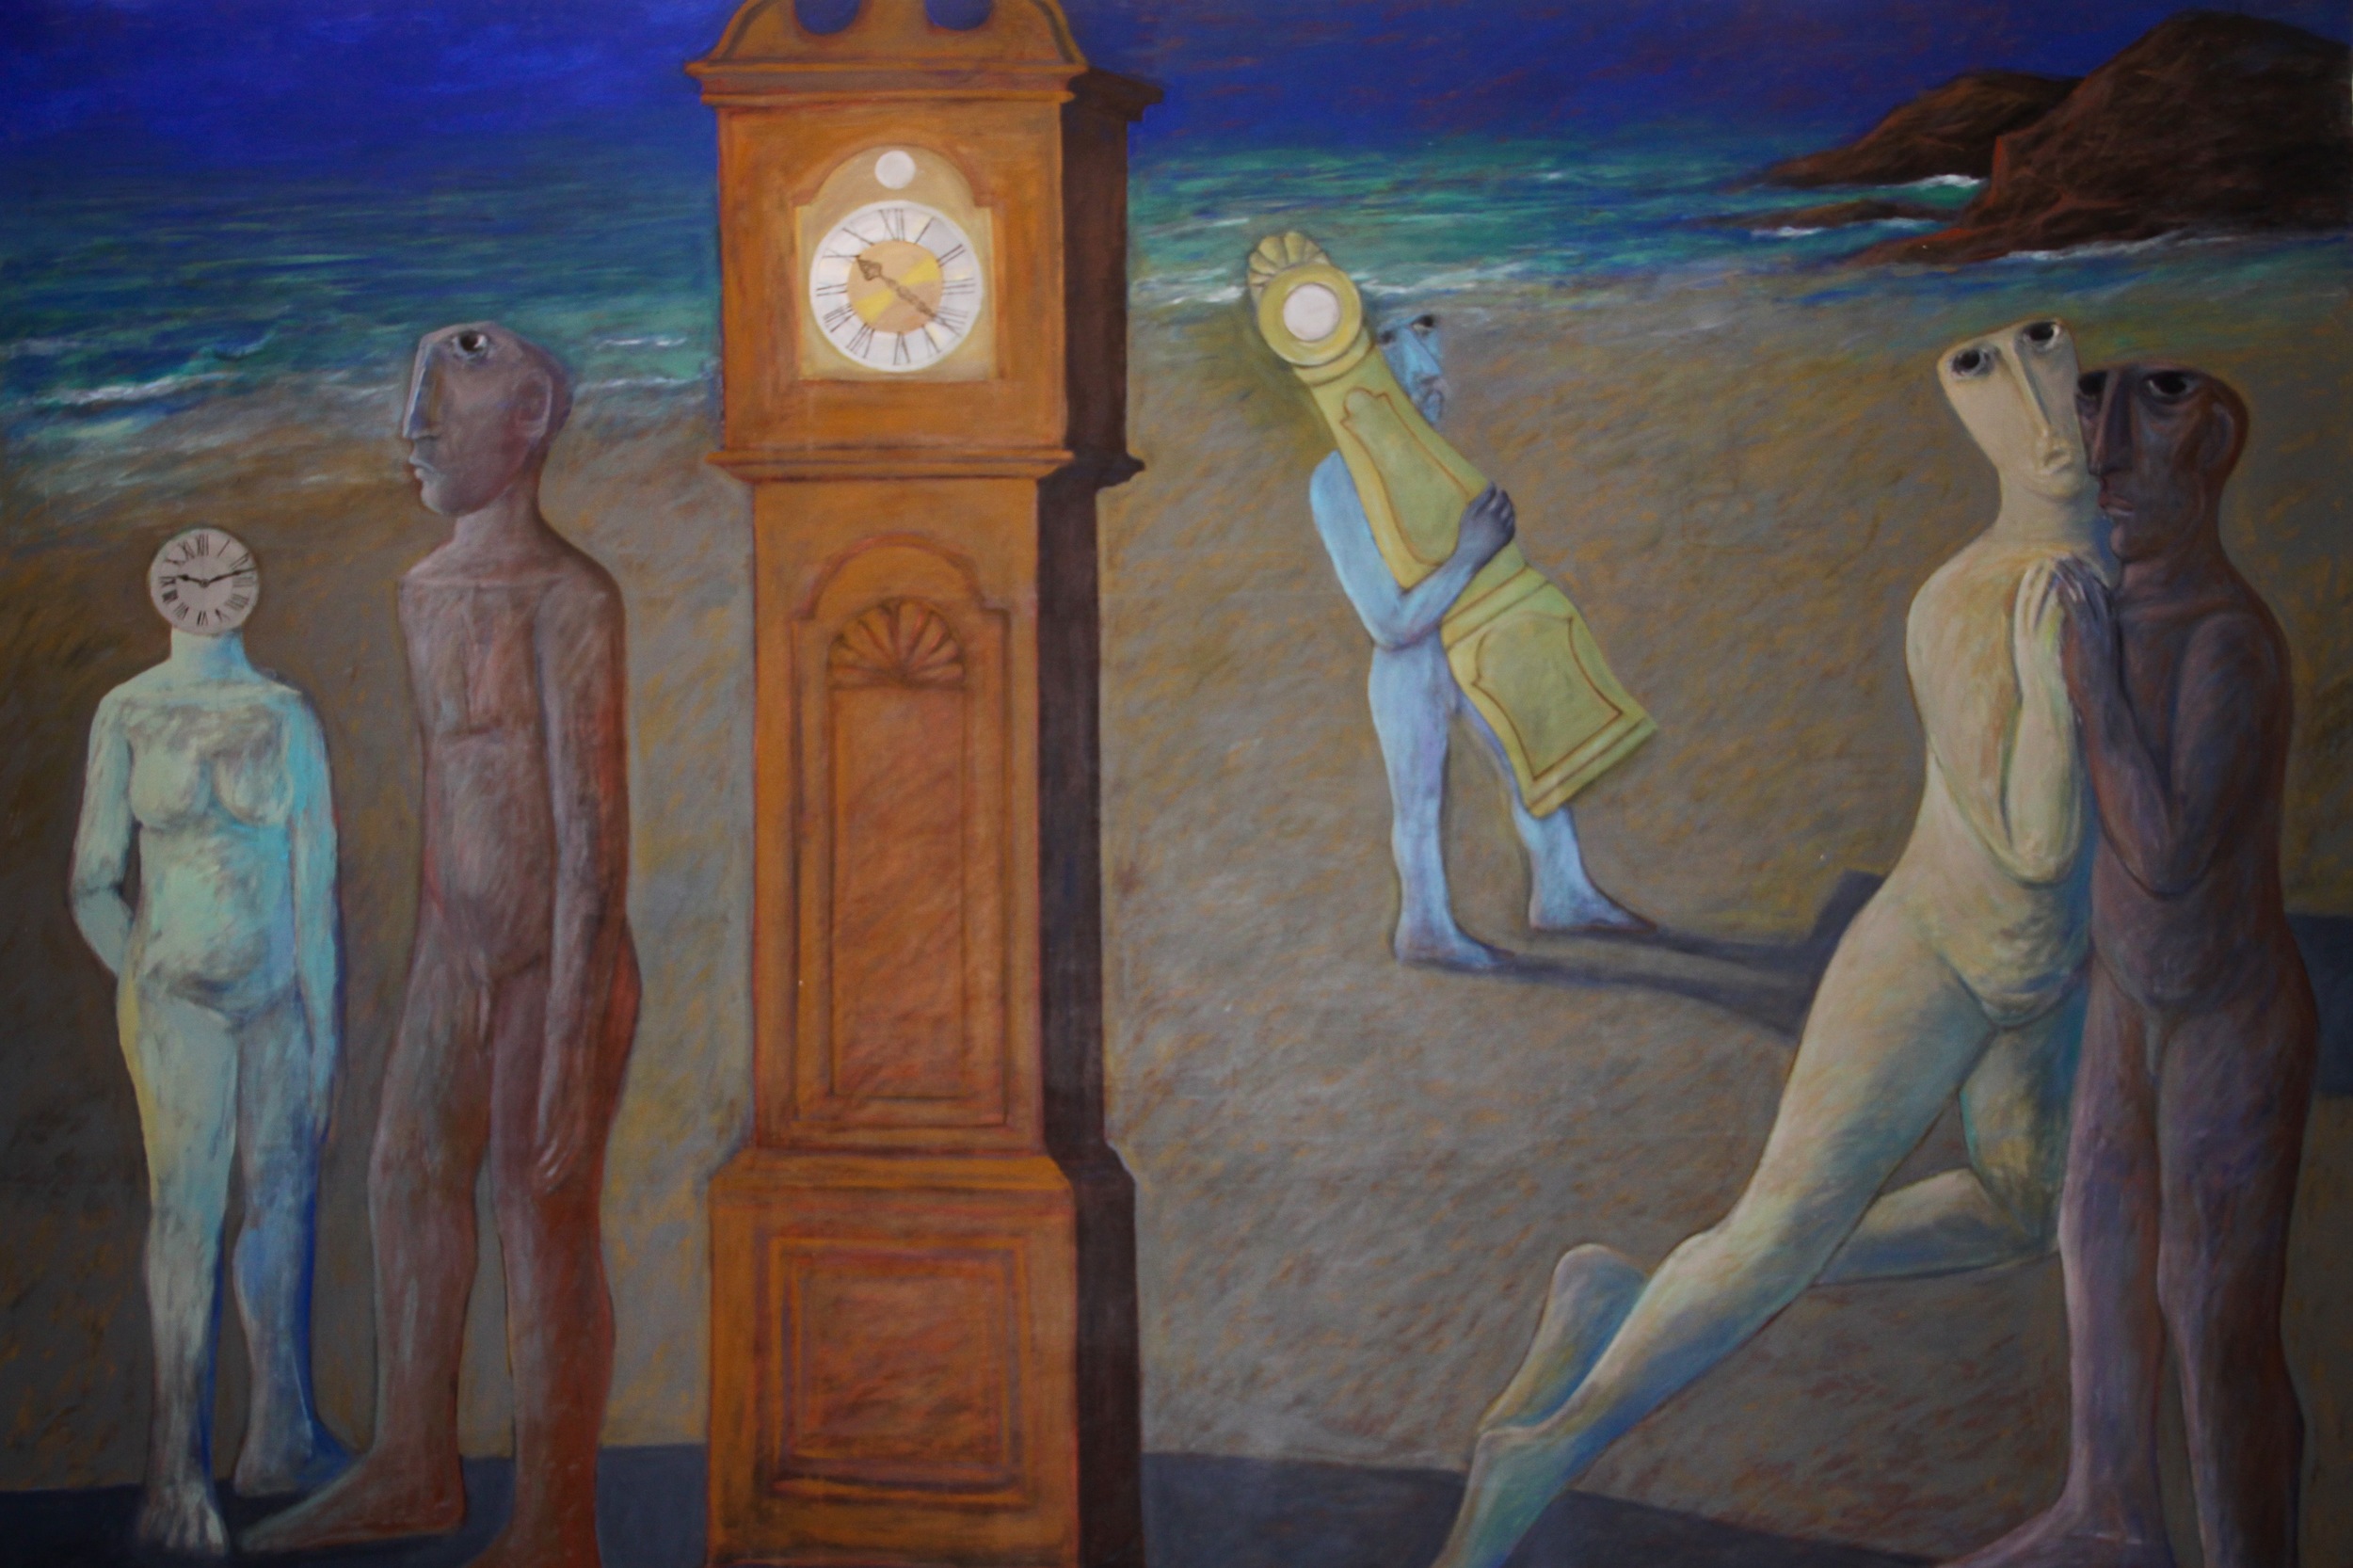  Ahmed Morsi,&nbsp;Clocks II,&nbsp;1998,&nbsp;Acrylic on canvas,&nbsp;305 x 209 cm.    